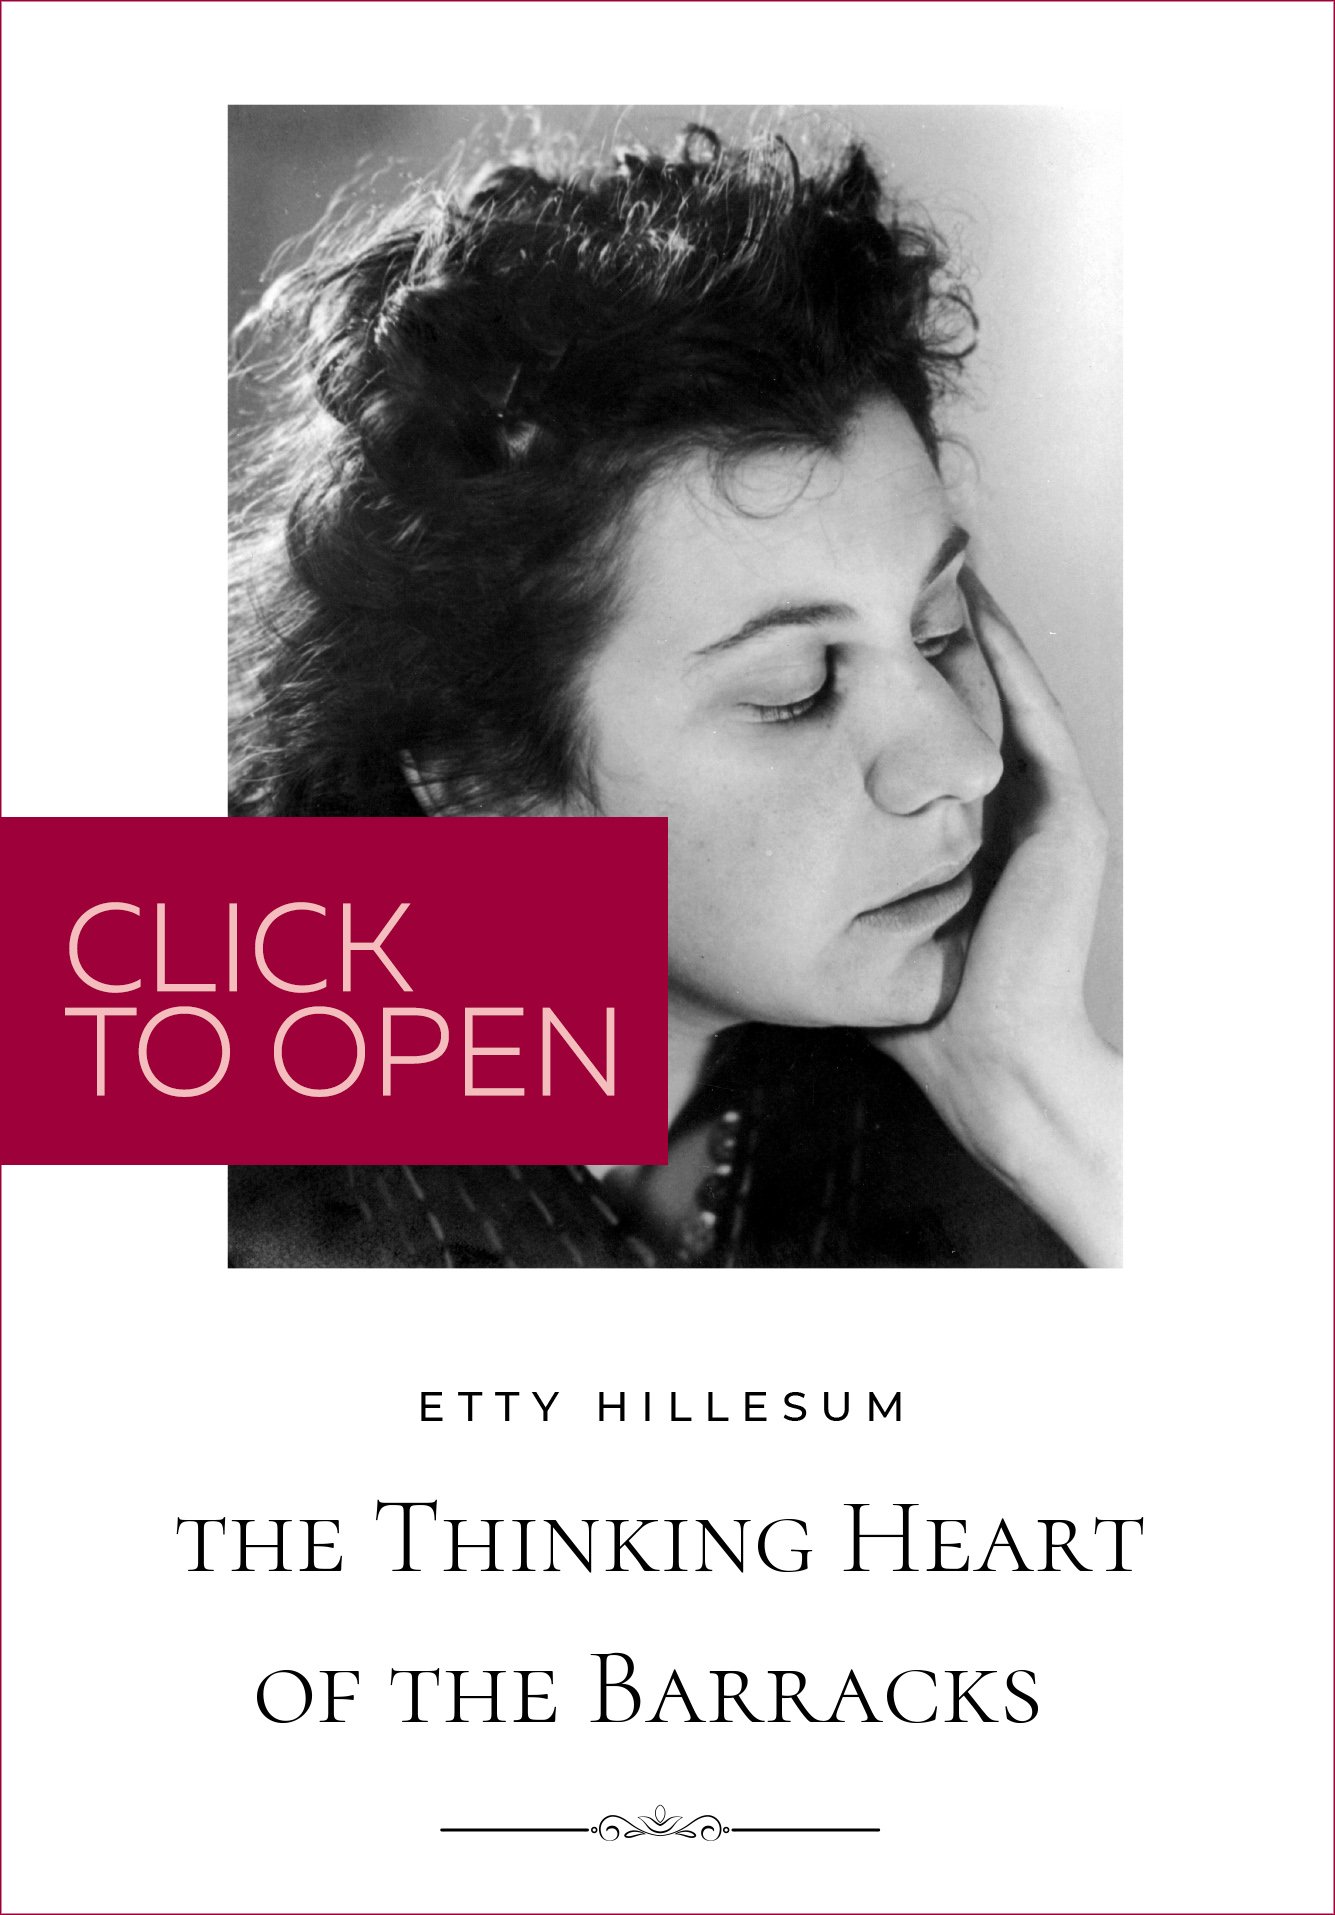 Etty Hillesum: An Interrupted Life